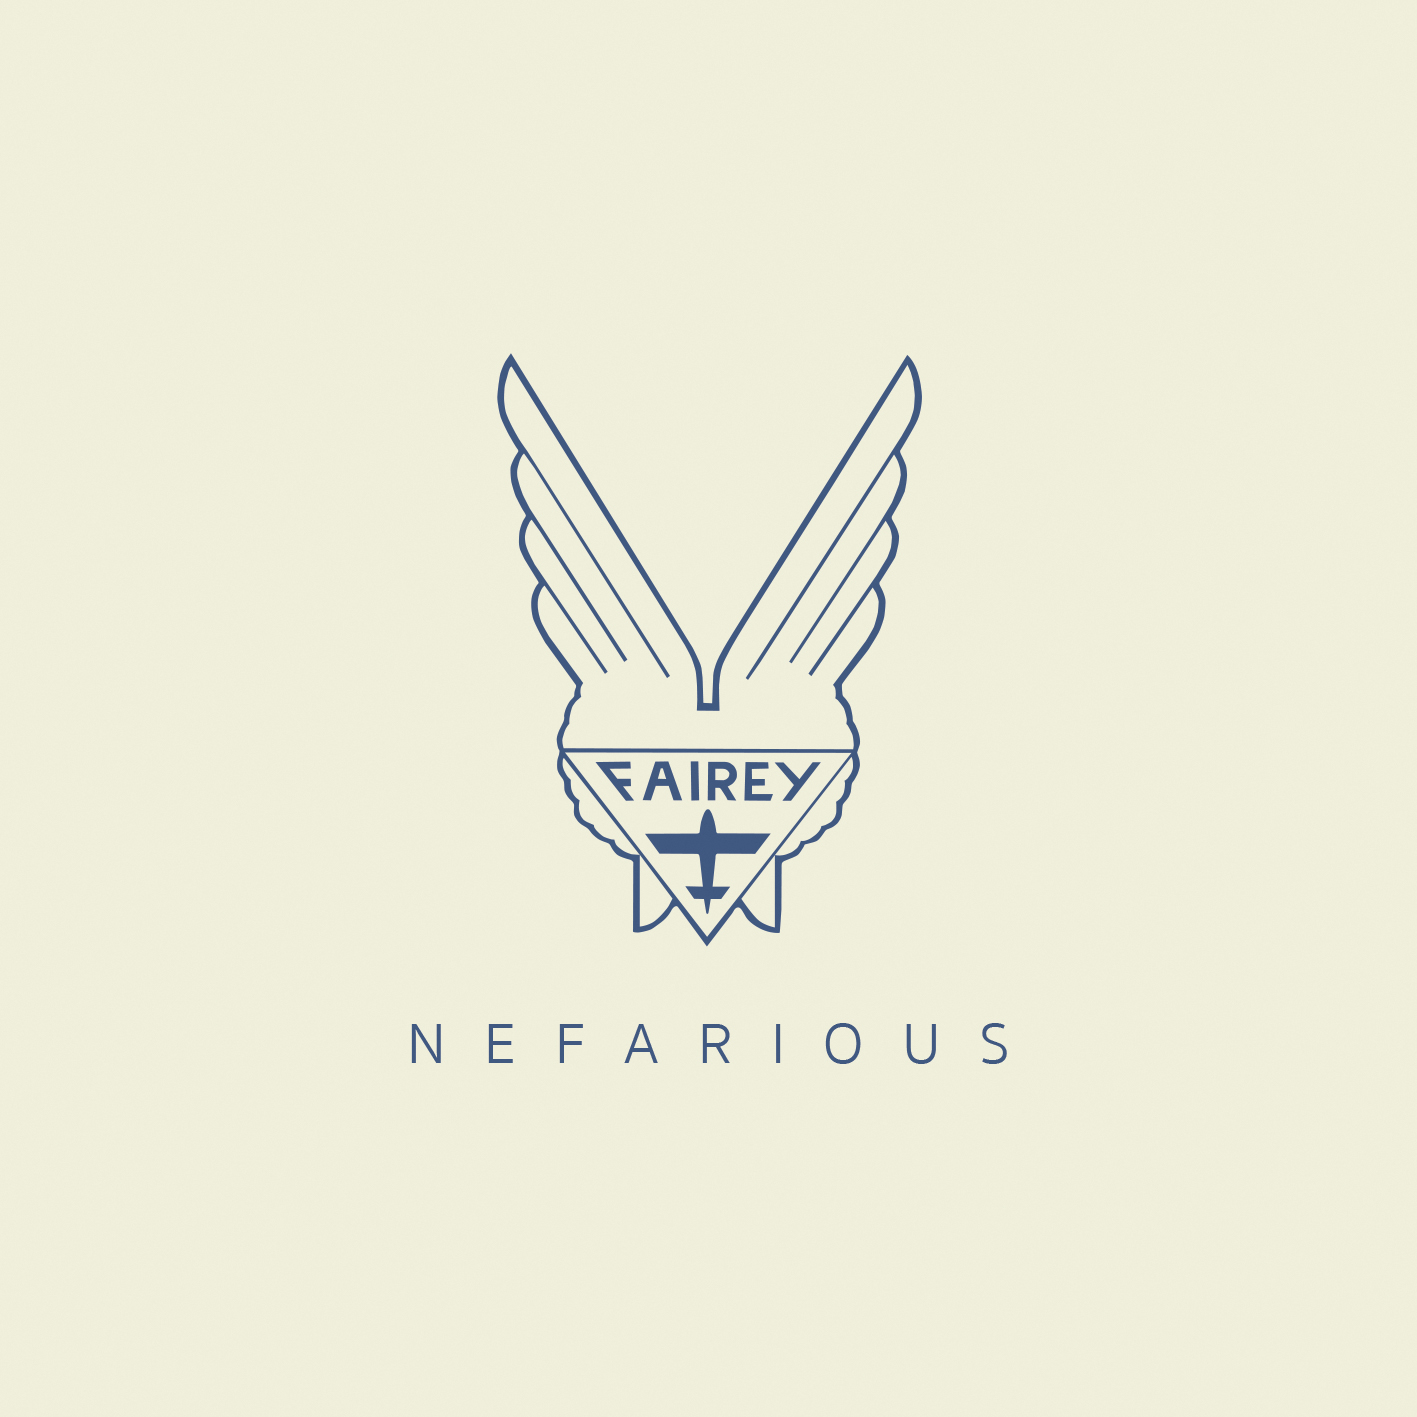 Nefarious - Download